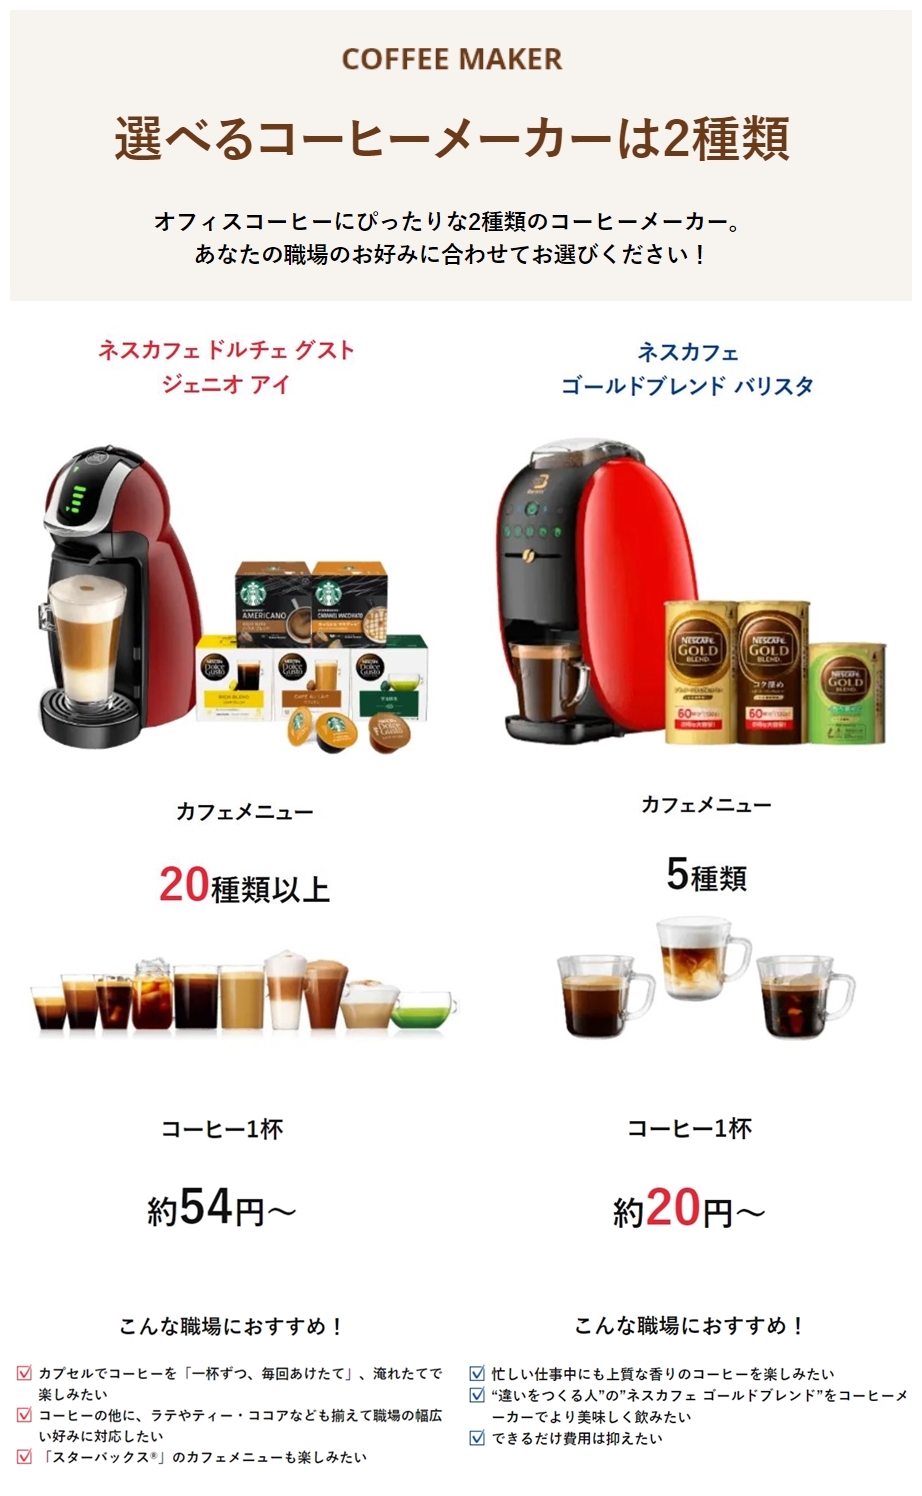 ネスカフェアンバサダーで使える2種類のコーヒーマシン